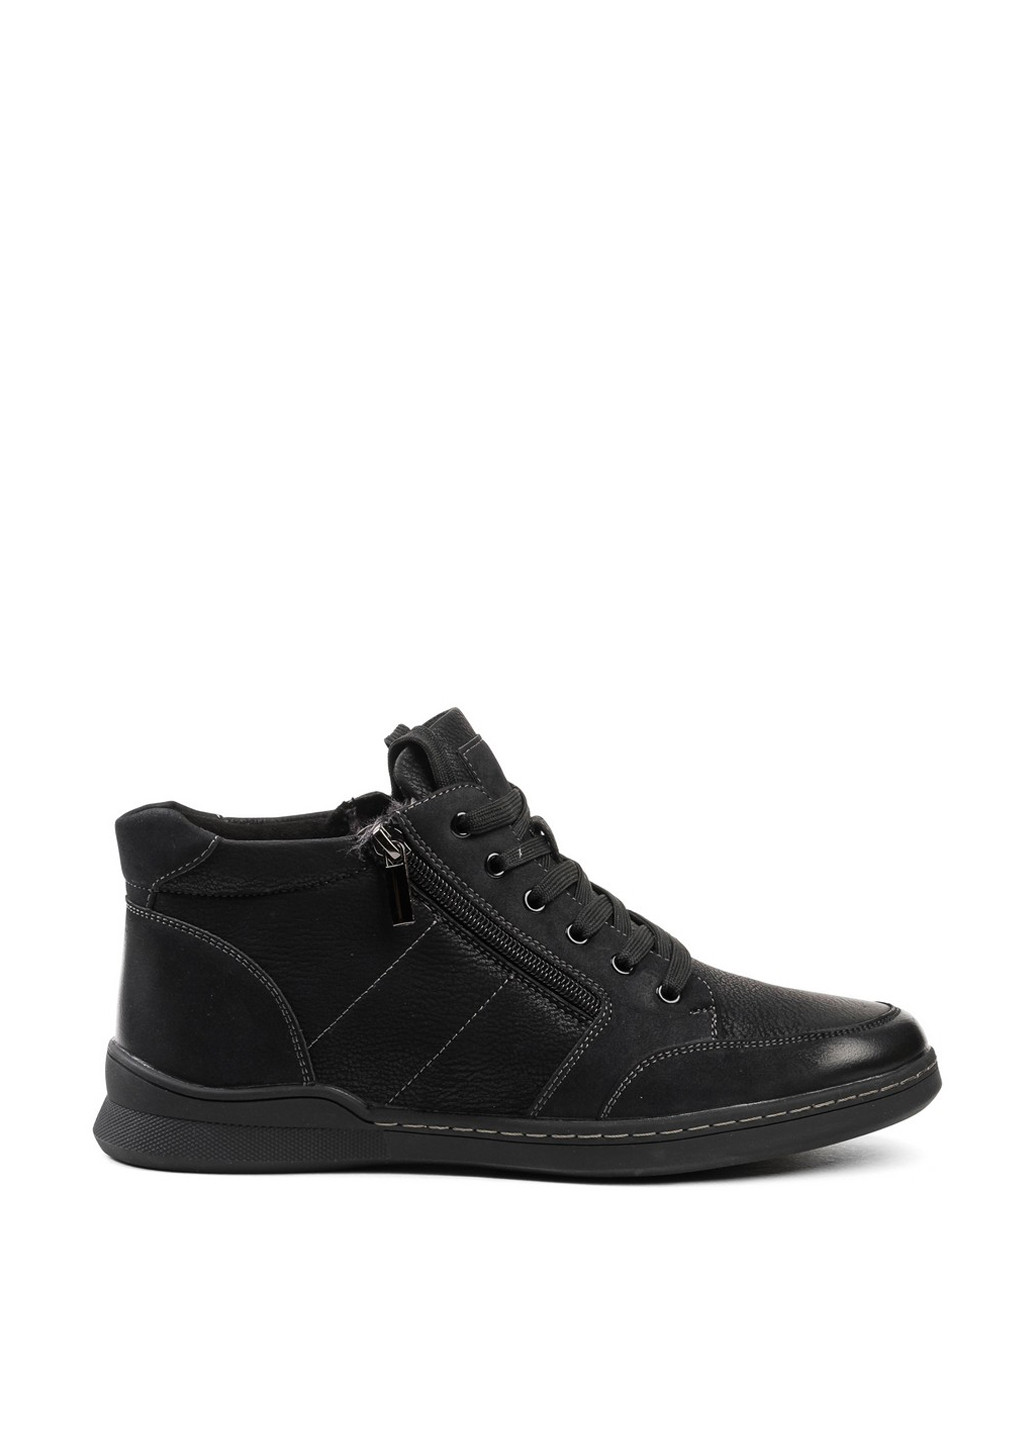 Черные осенние ботинки Oxide